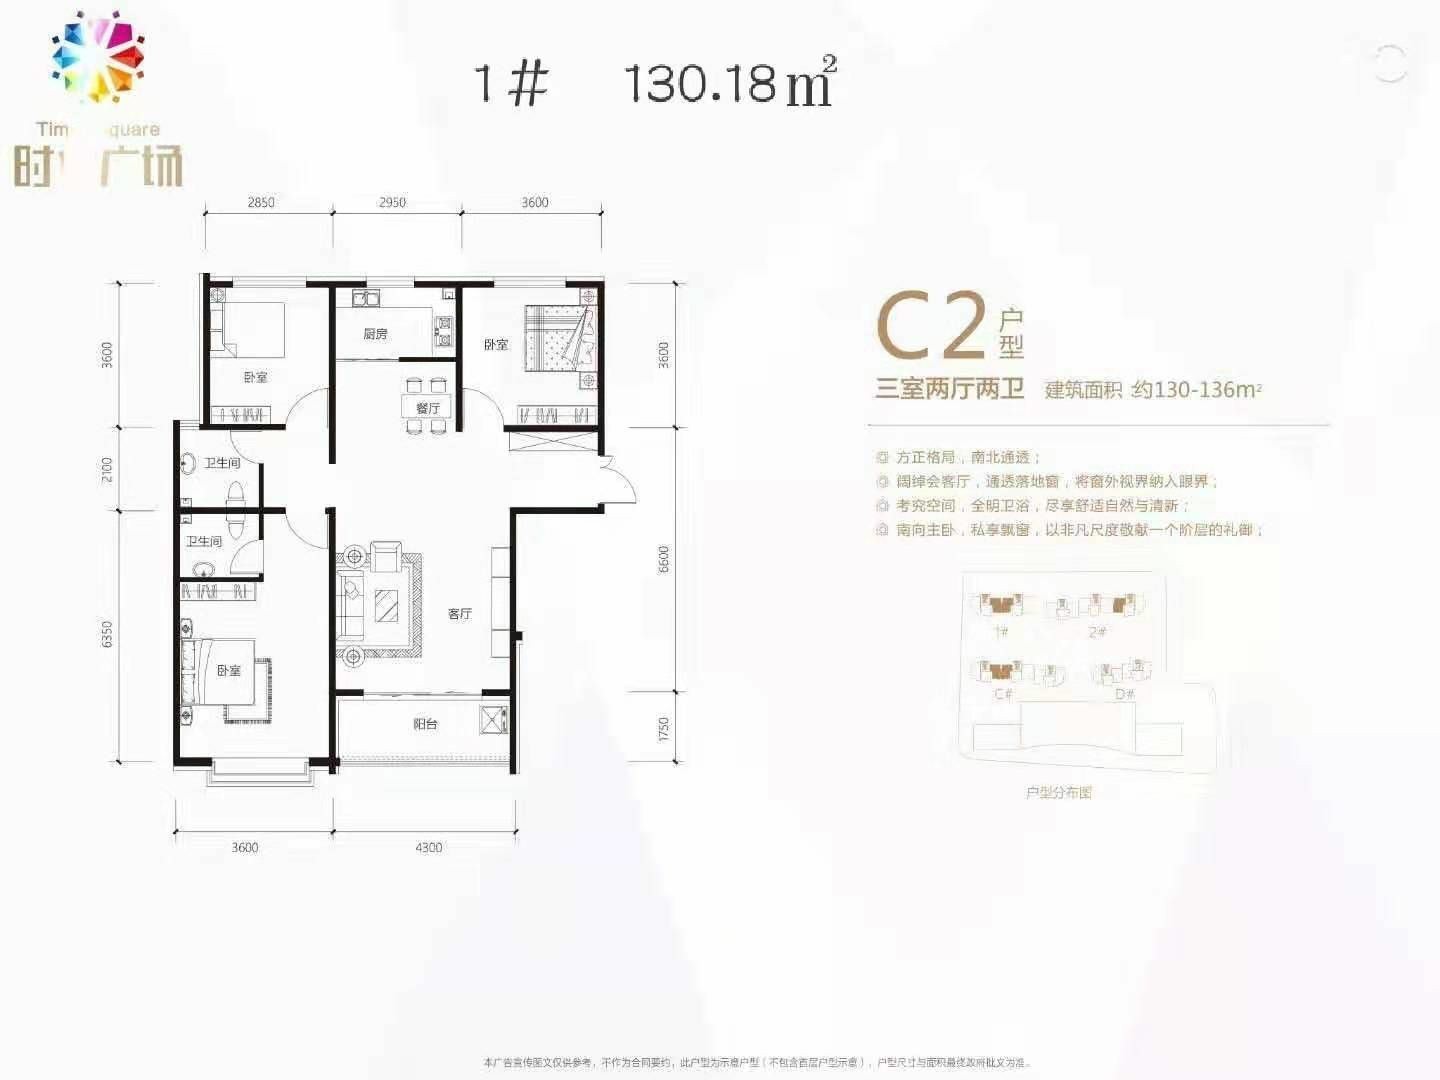 衡水时代广场二期C2户型3室2厅2卫133平米